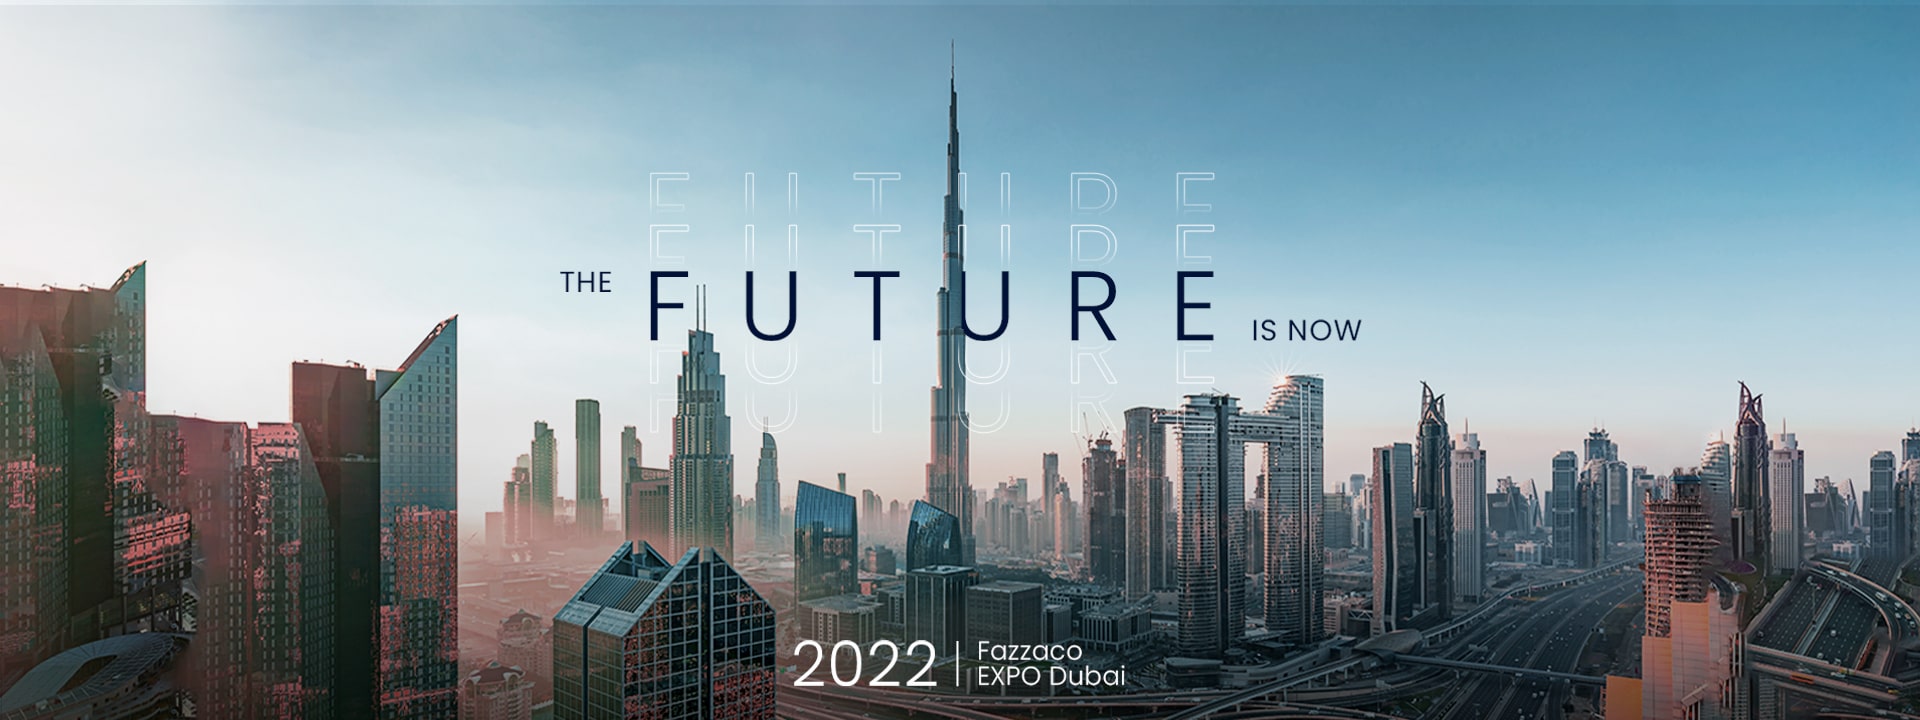 Fazzaco Dubai 2022